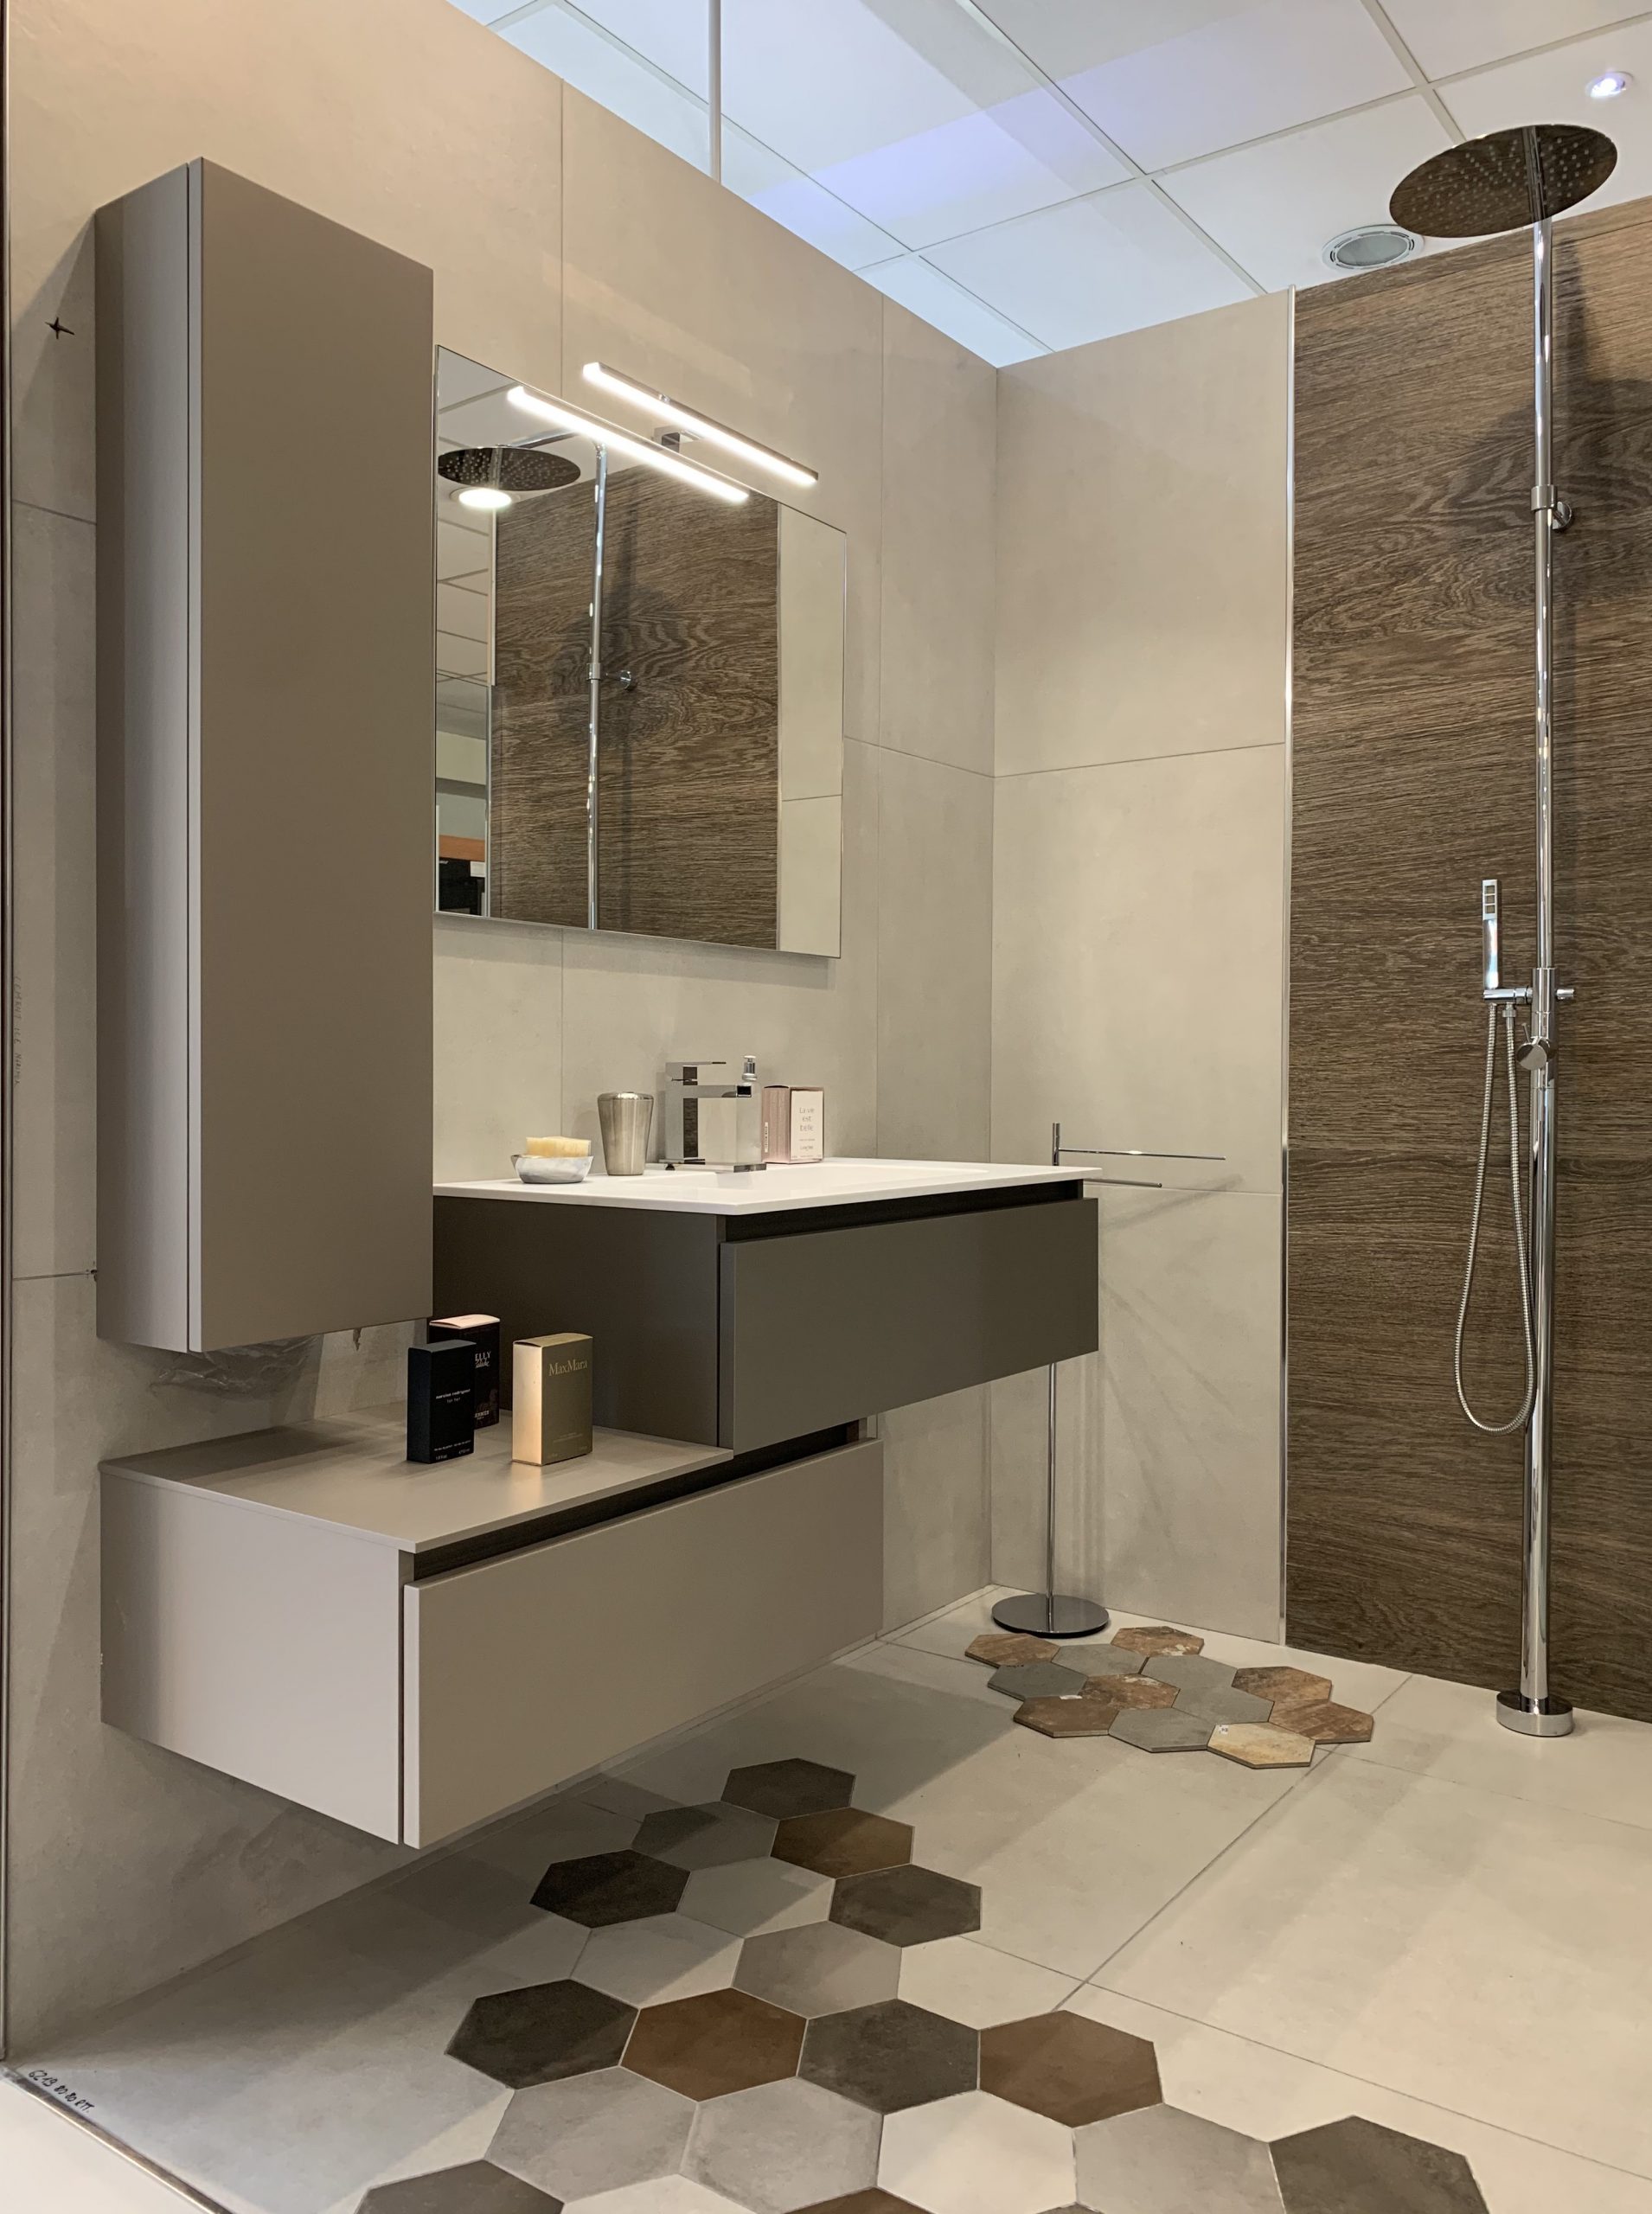 Immagine raffigurante un lavandino con dei mobili e uno specchio. Sulla destra dell'immagine si vede un soffione della doccia.